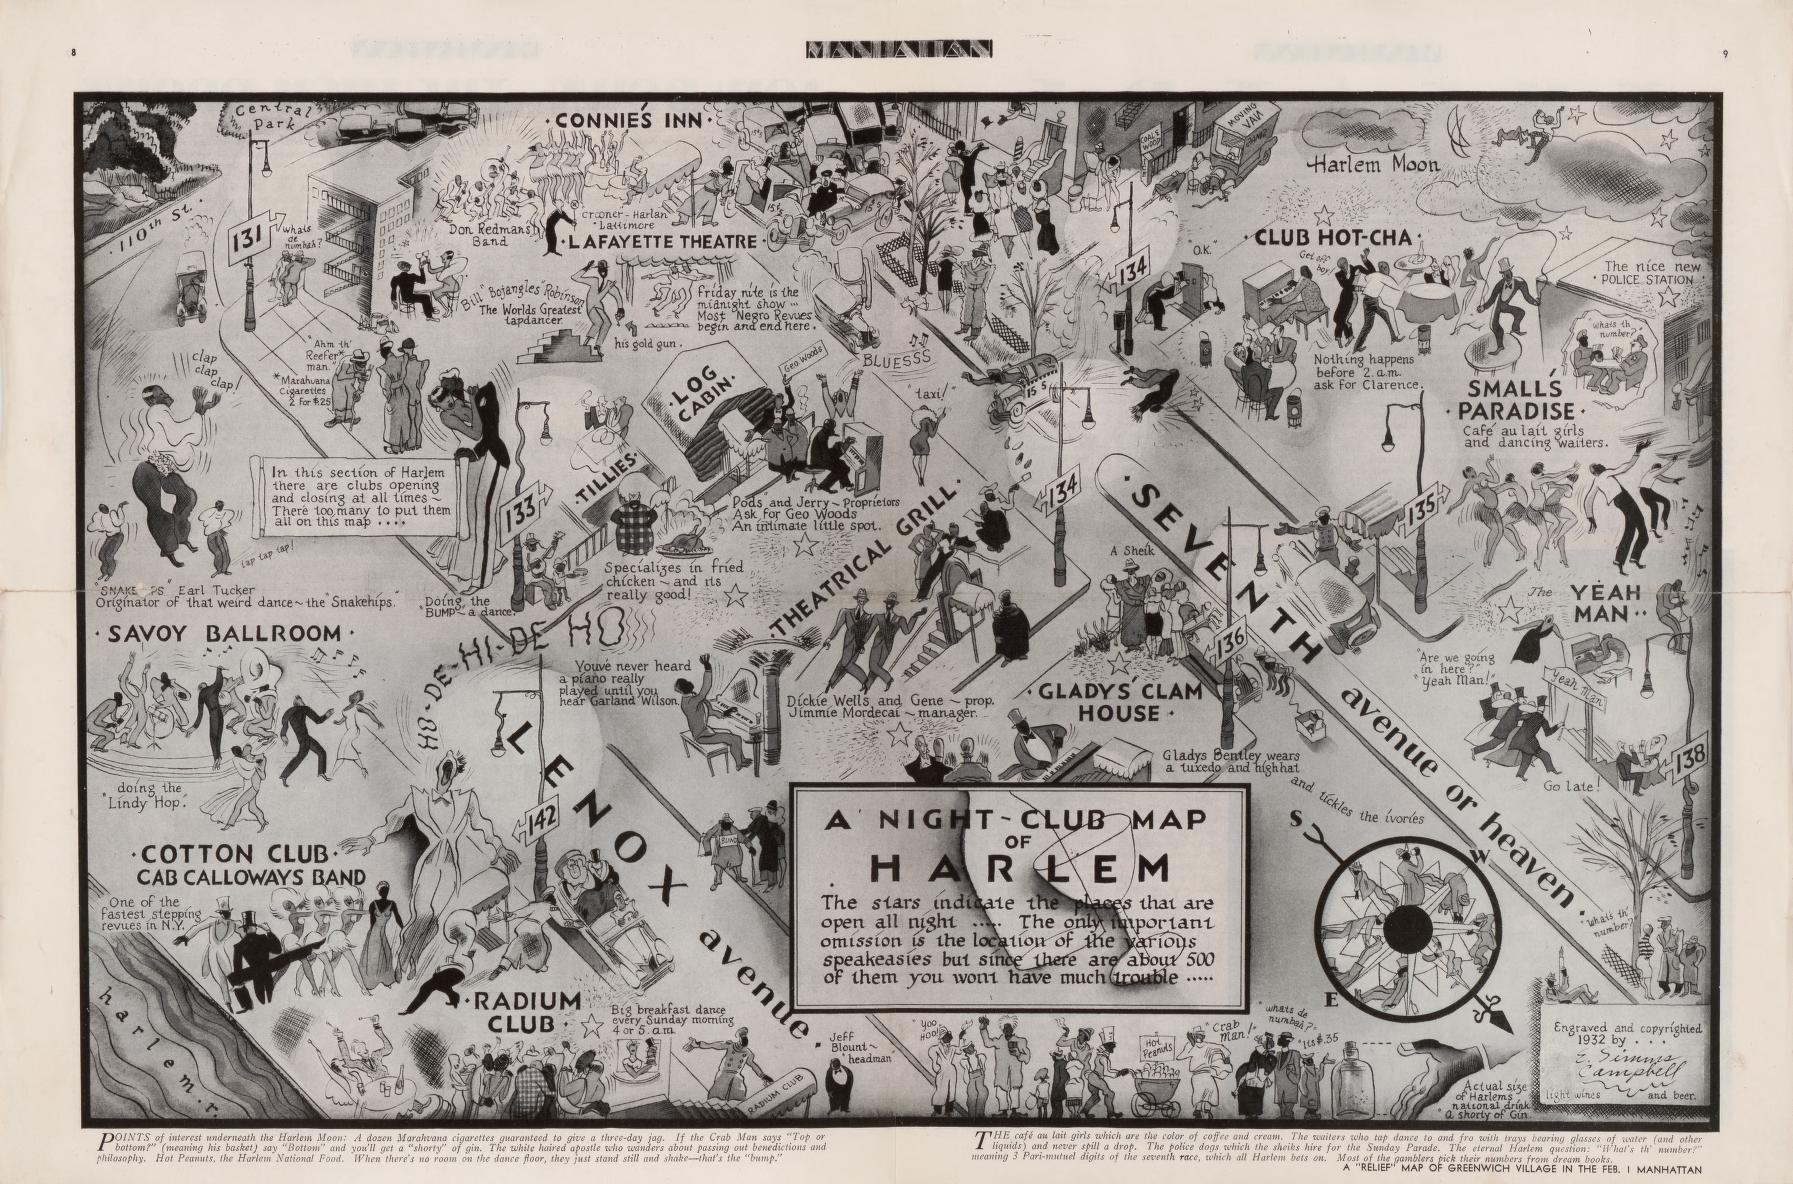 A night-club map of Harlem